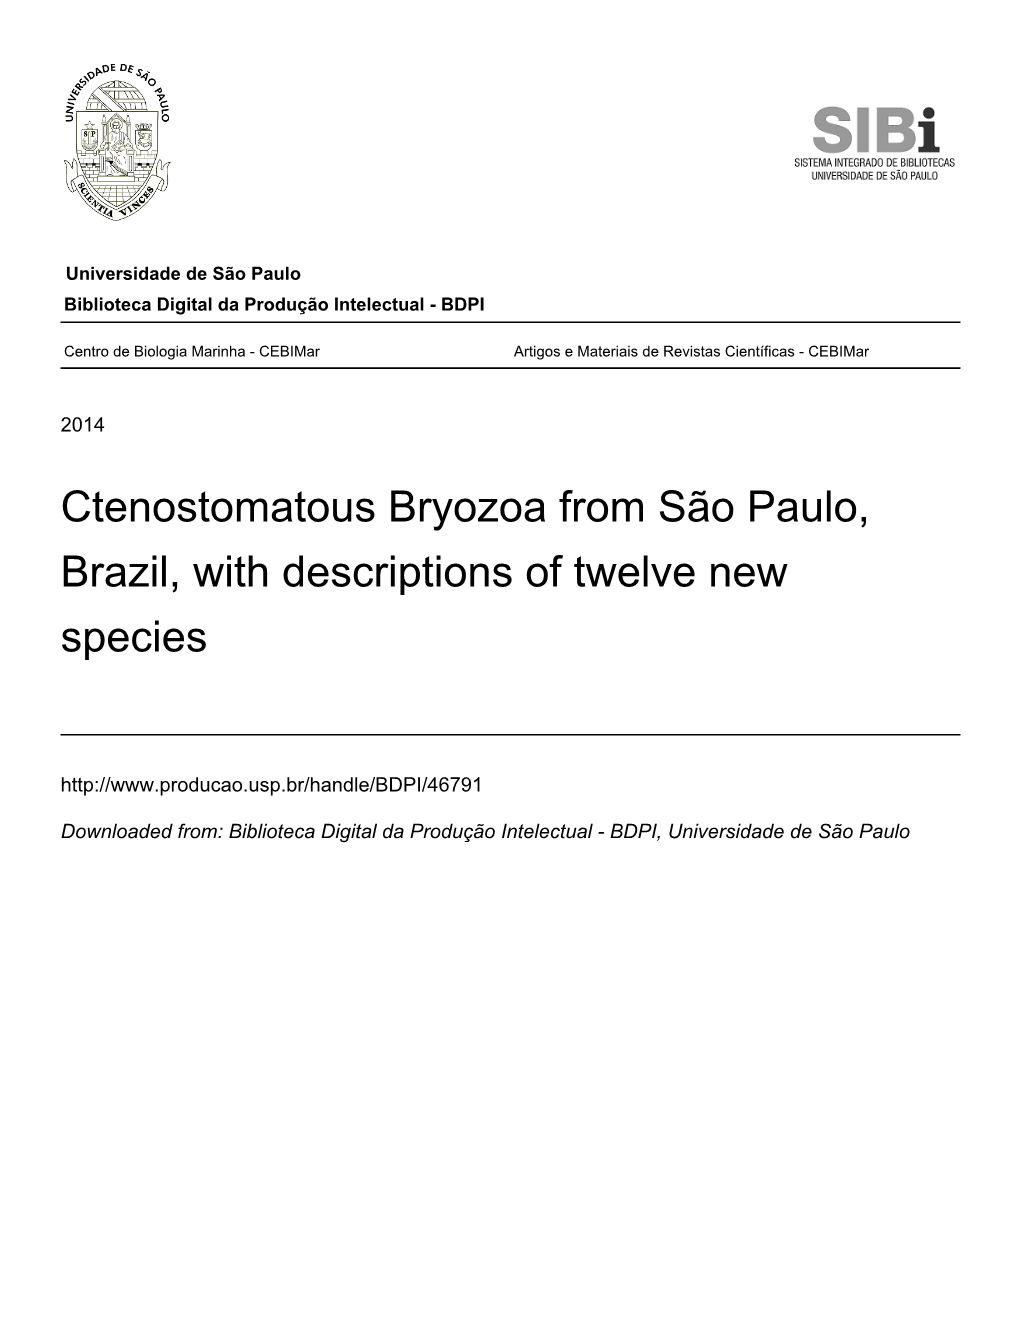 Ctenostomatous Bryozoa from São Paulo, Brazil, with Descriptions of Twelve New Species